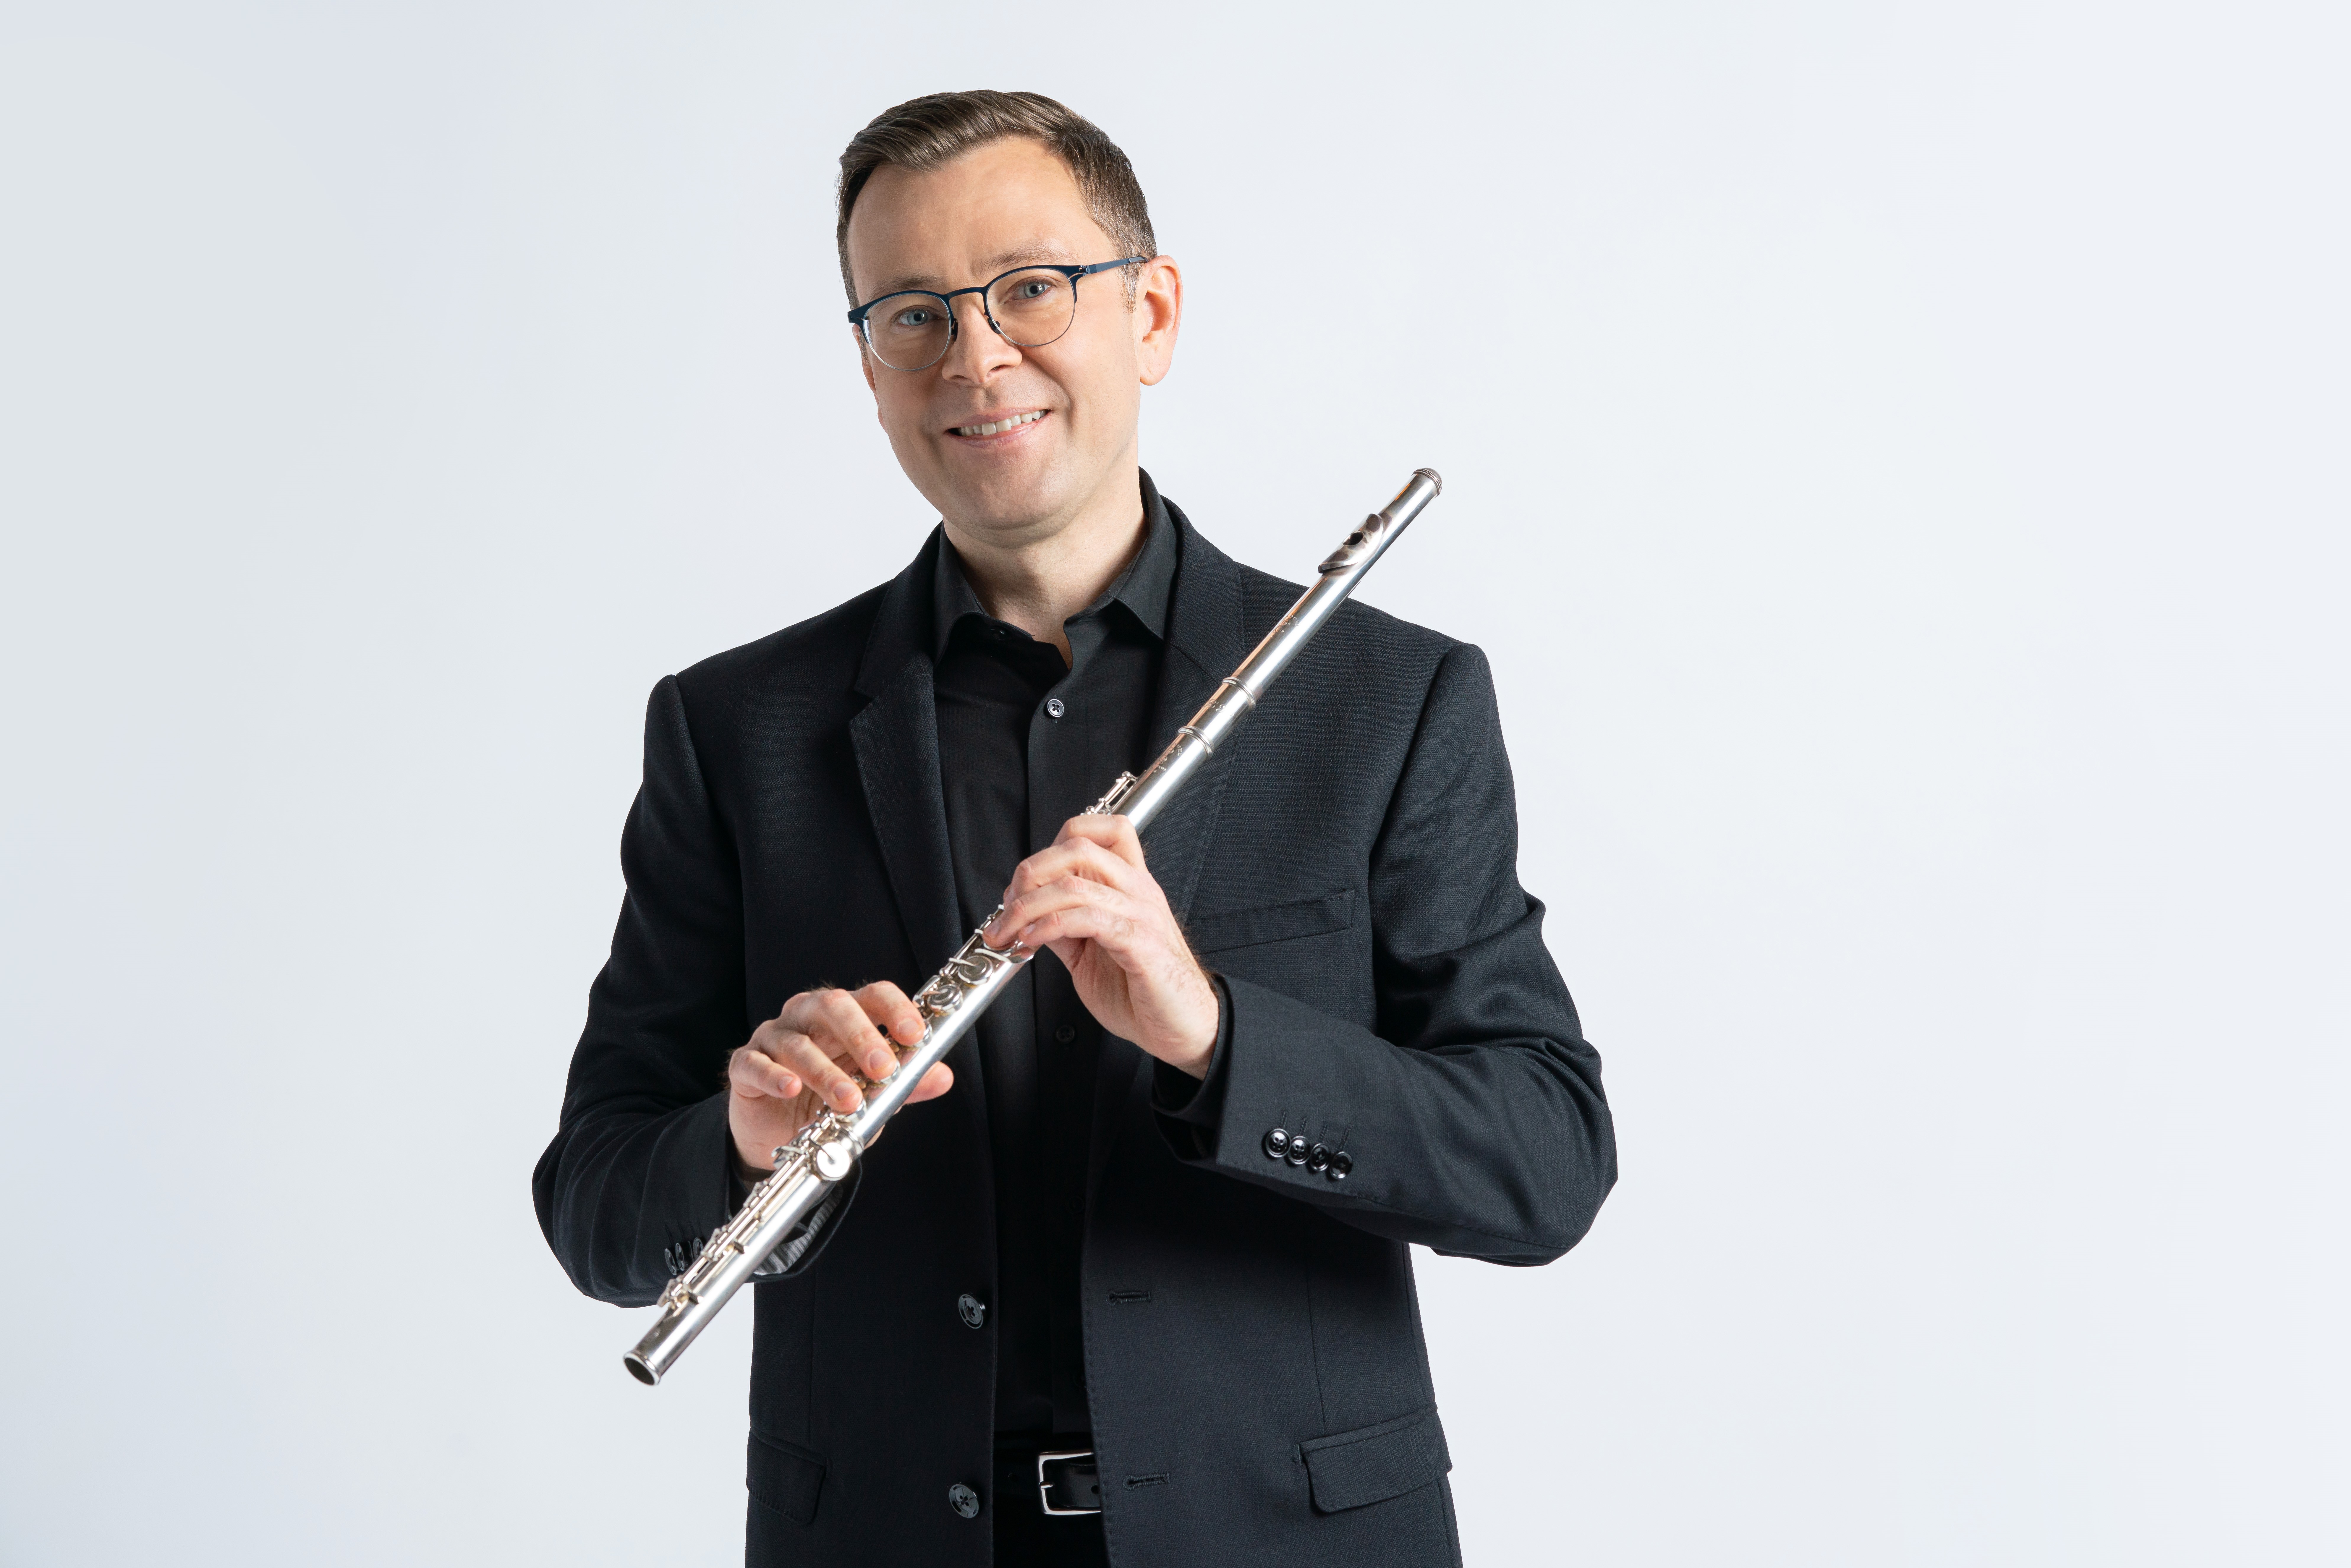 Stefan Ragnor Hoskuldsson flute (2021)